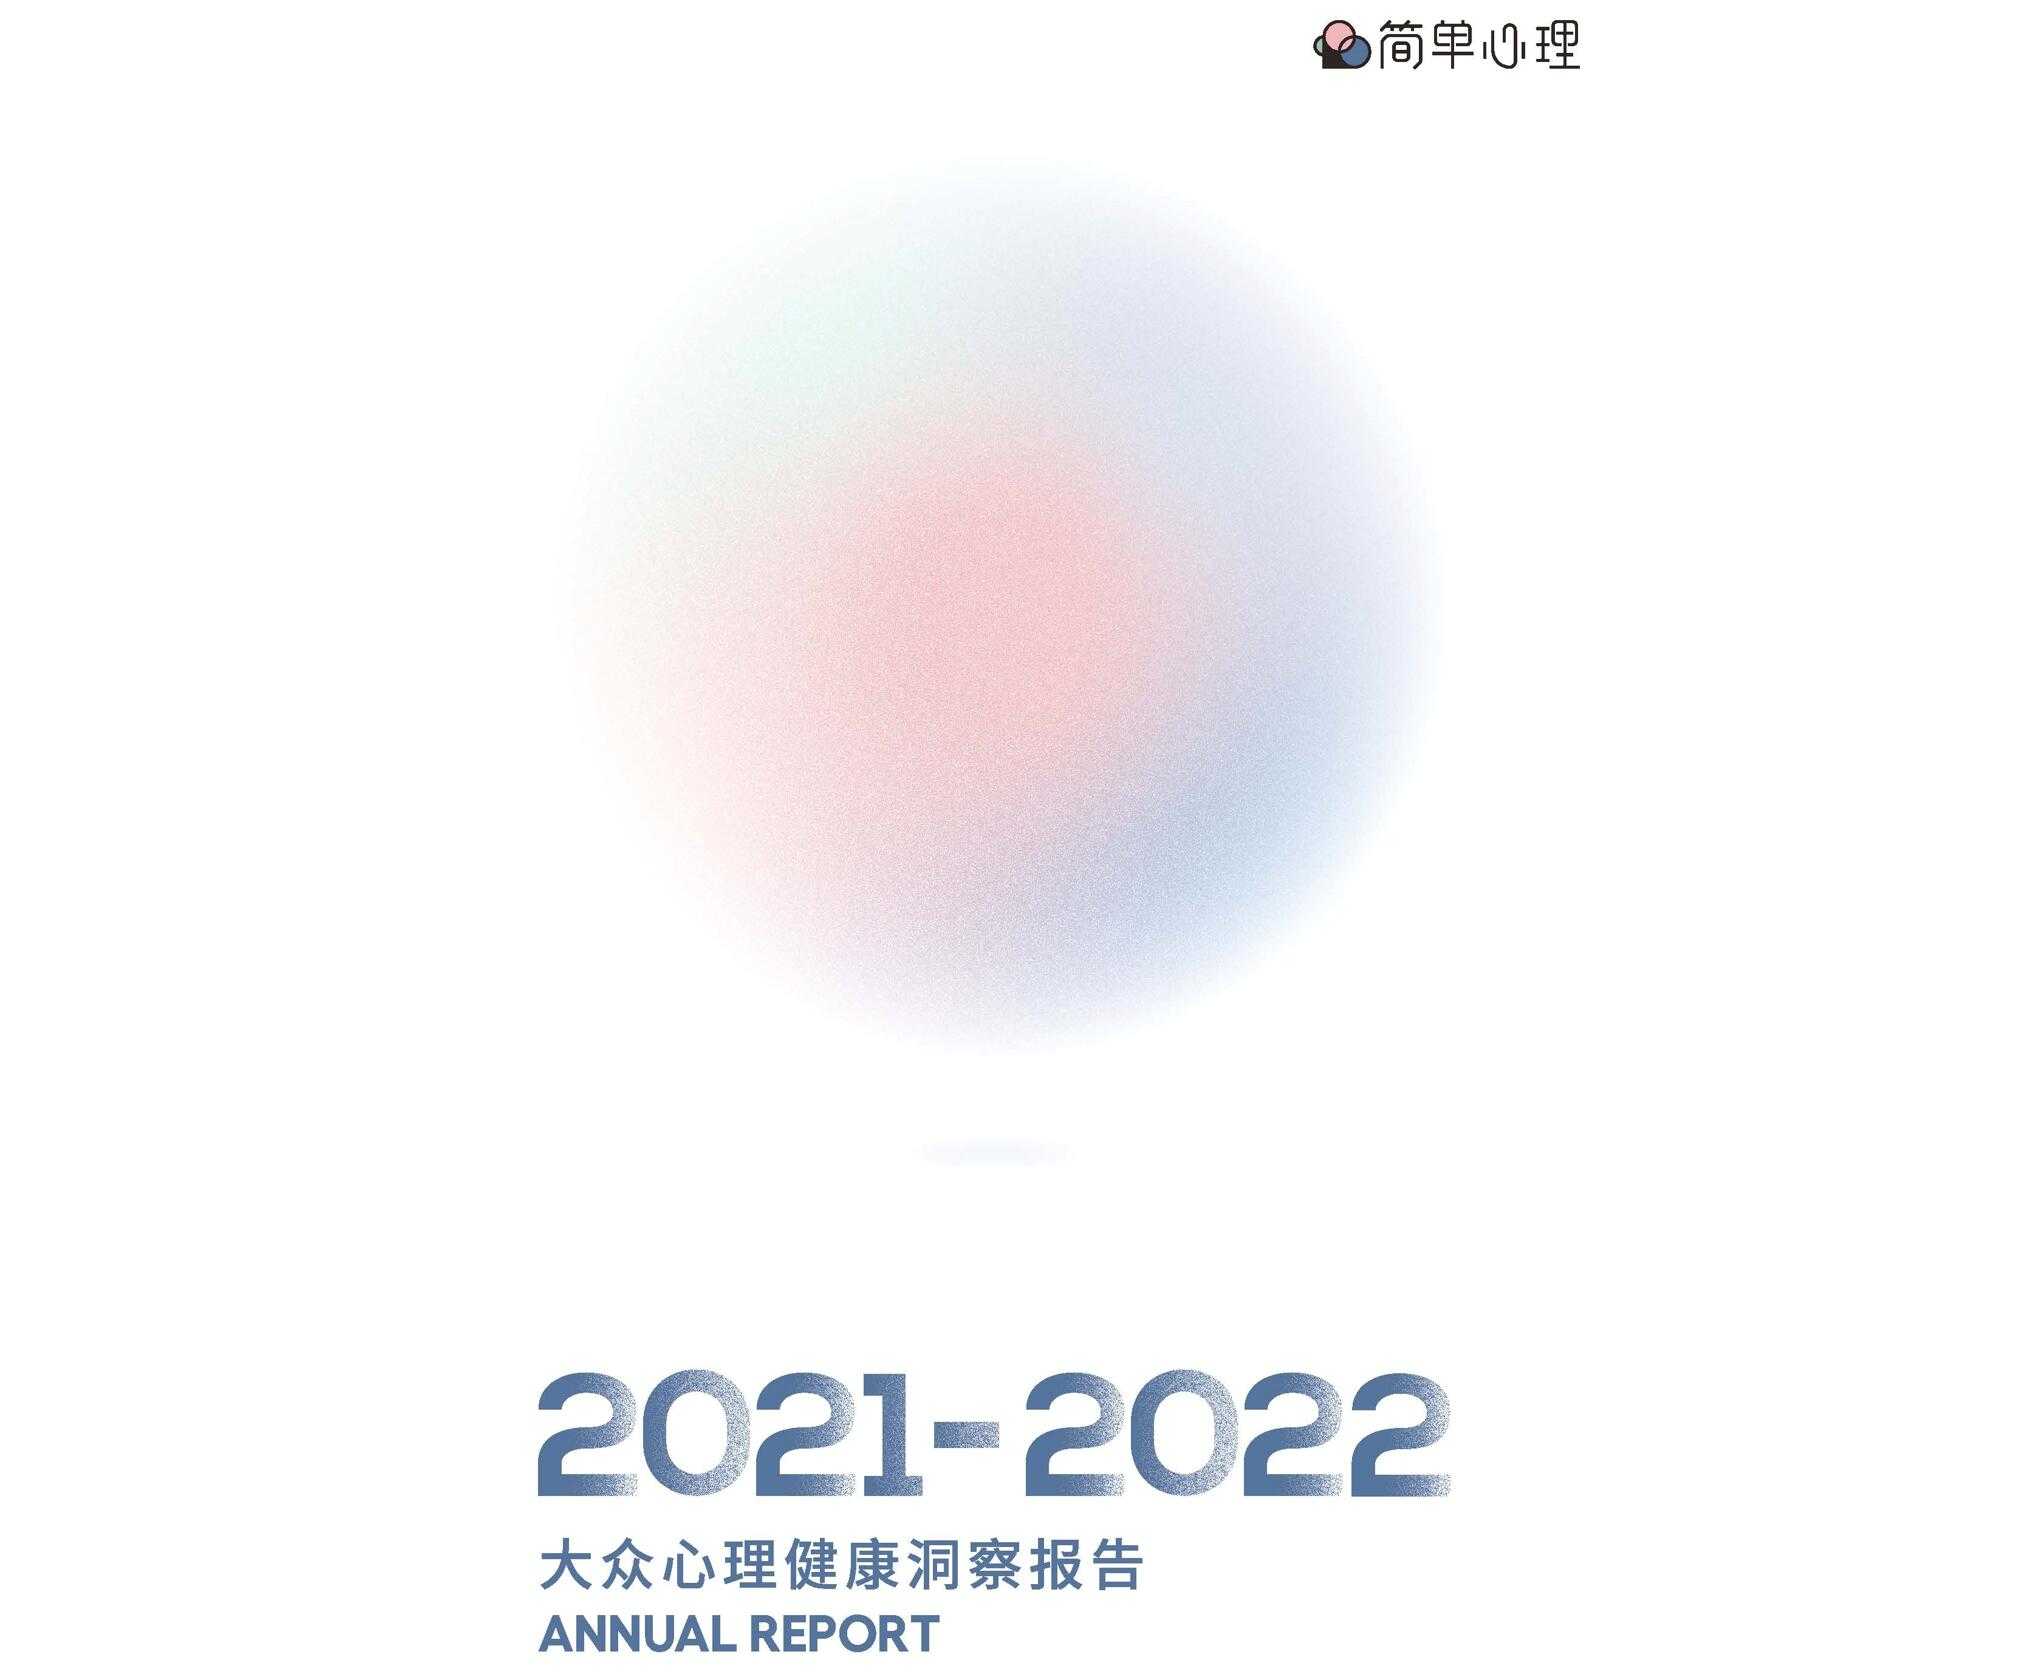 【营销任意门】2021-2022大众心理健康洞察报告-简单心理